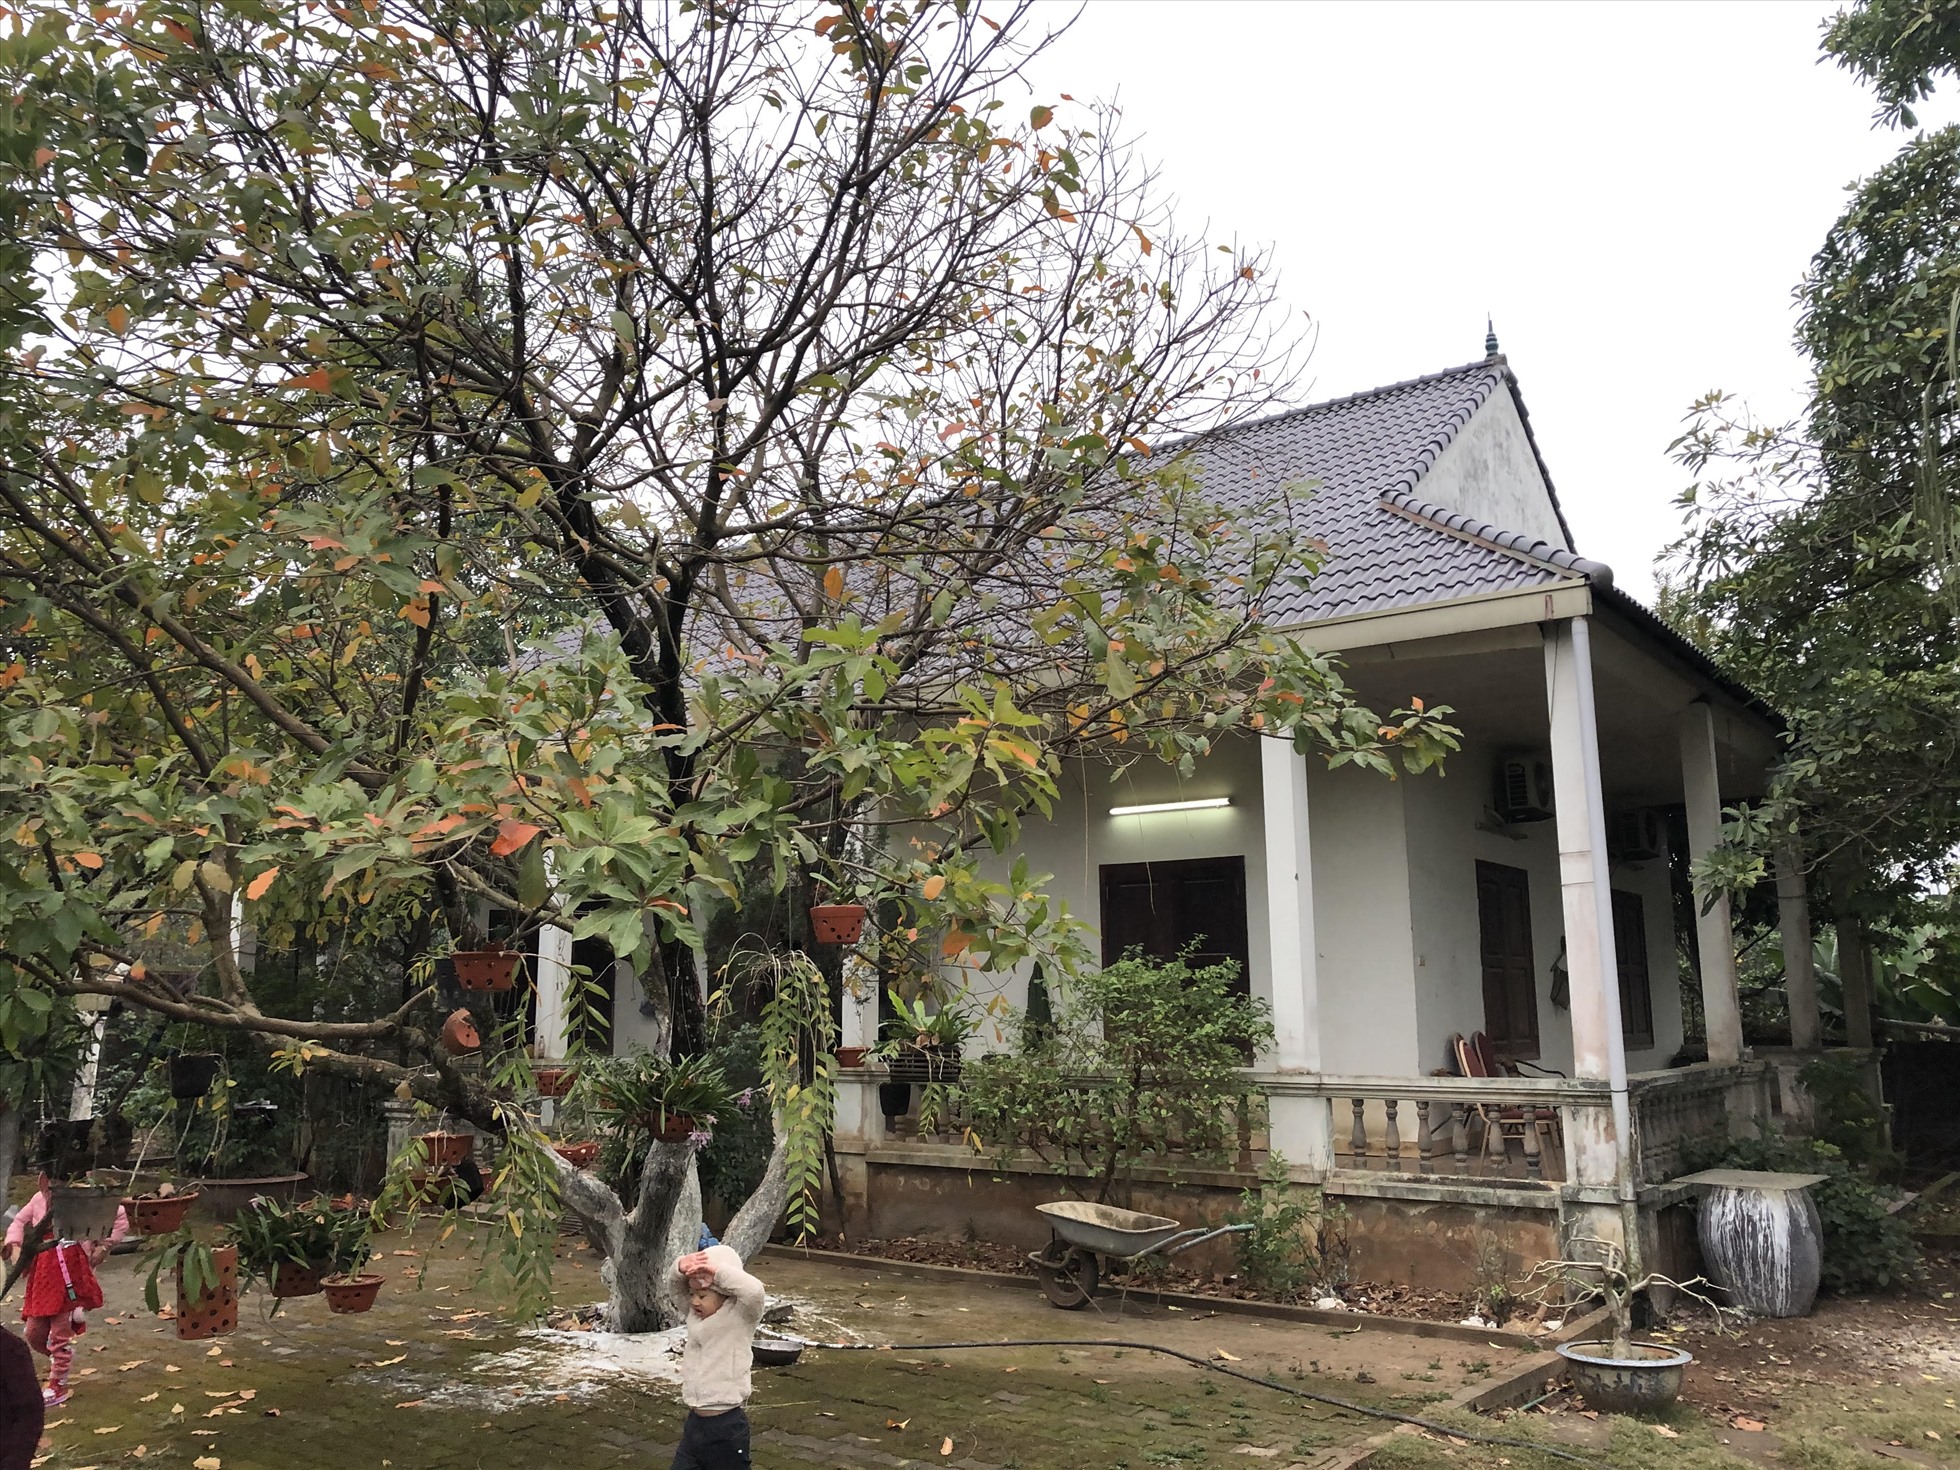 Một số ngôi nhà cũ ven đô được nhiều người mua lại cải tạo, trang trí để làm nơi nghỉ dưỡng cuối tuần. Ảnh Cao Nguyên.